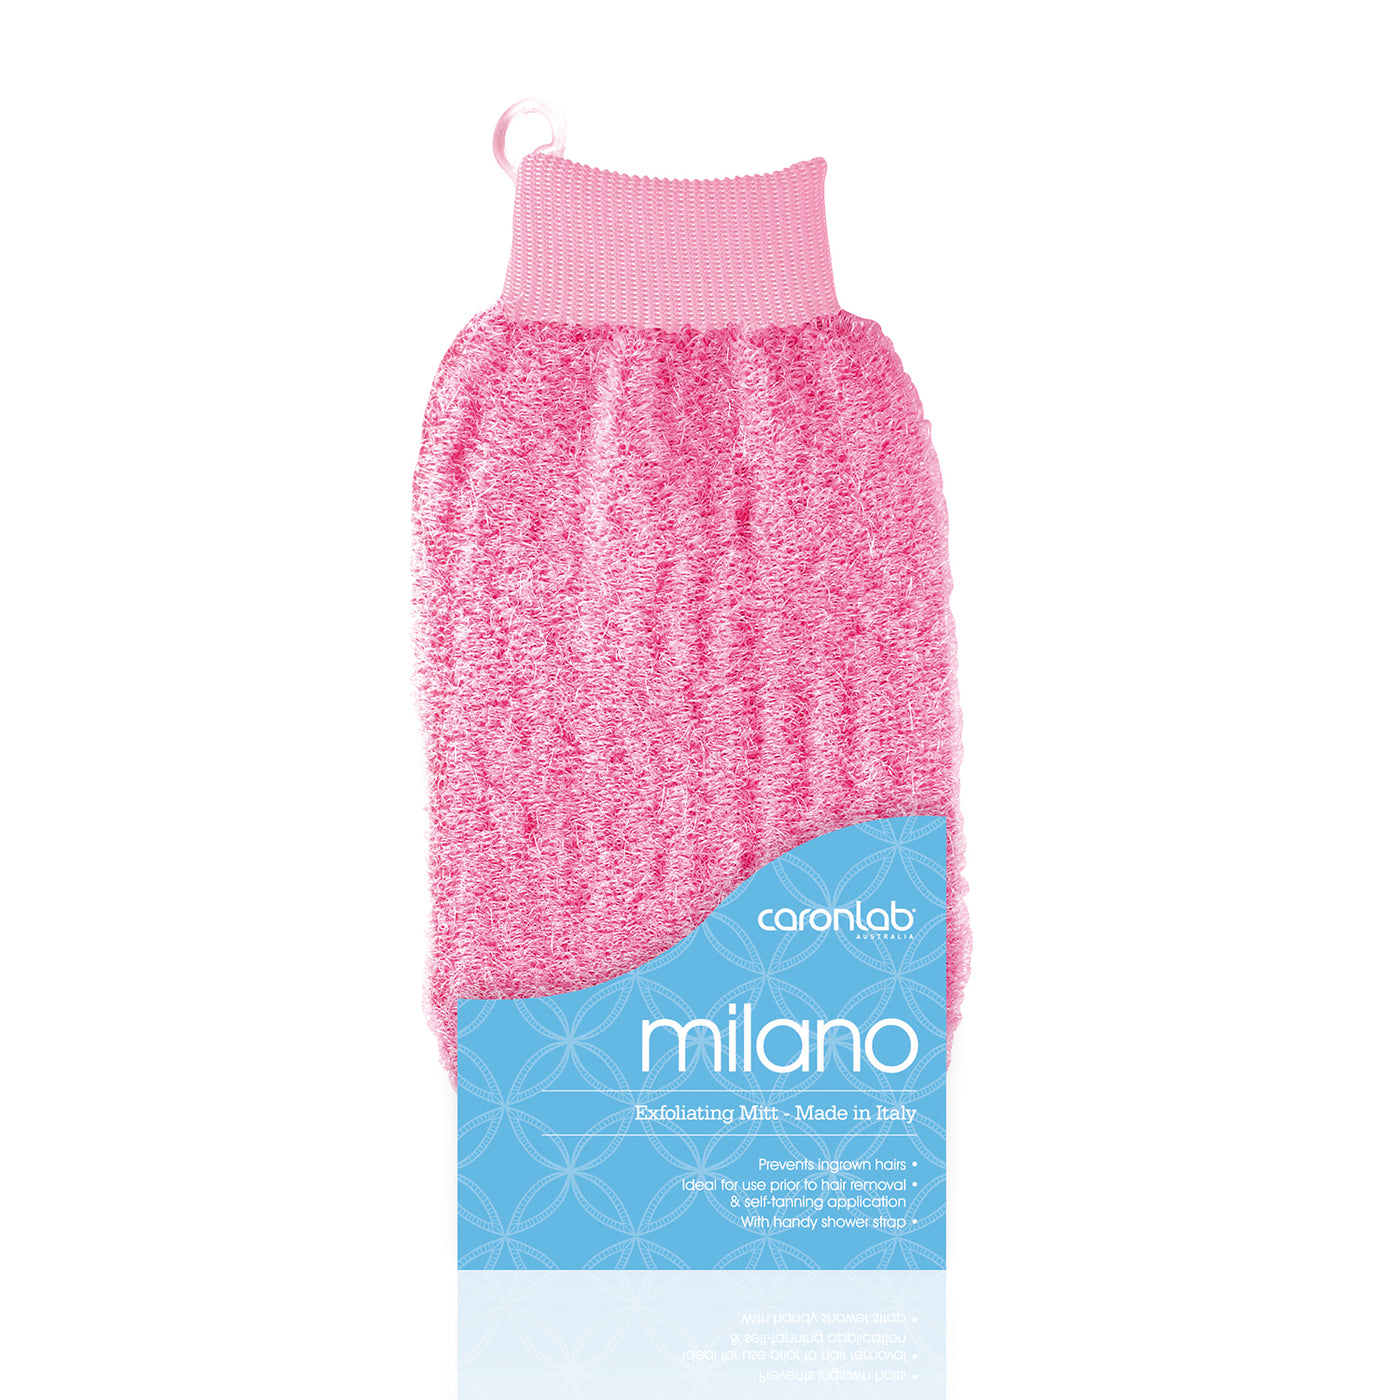 Caronlab Milano Exfoliating Massage Mitt pink